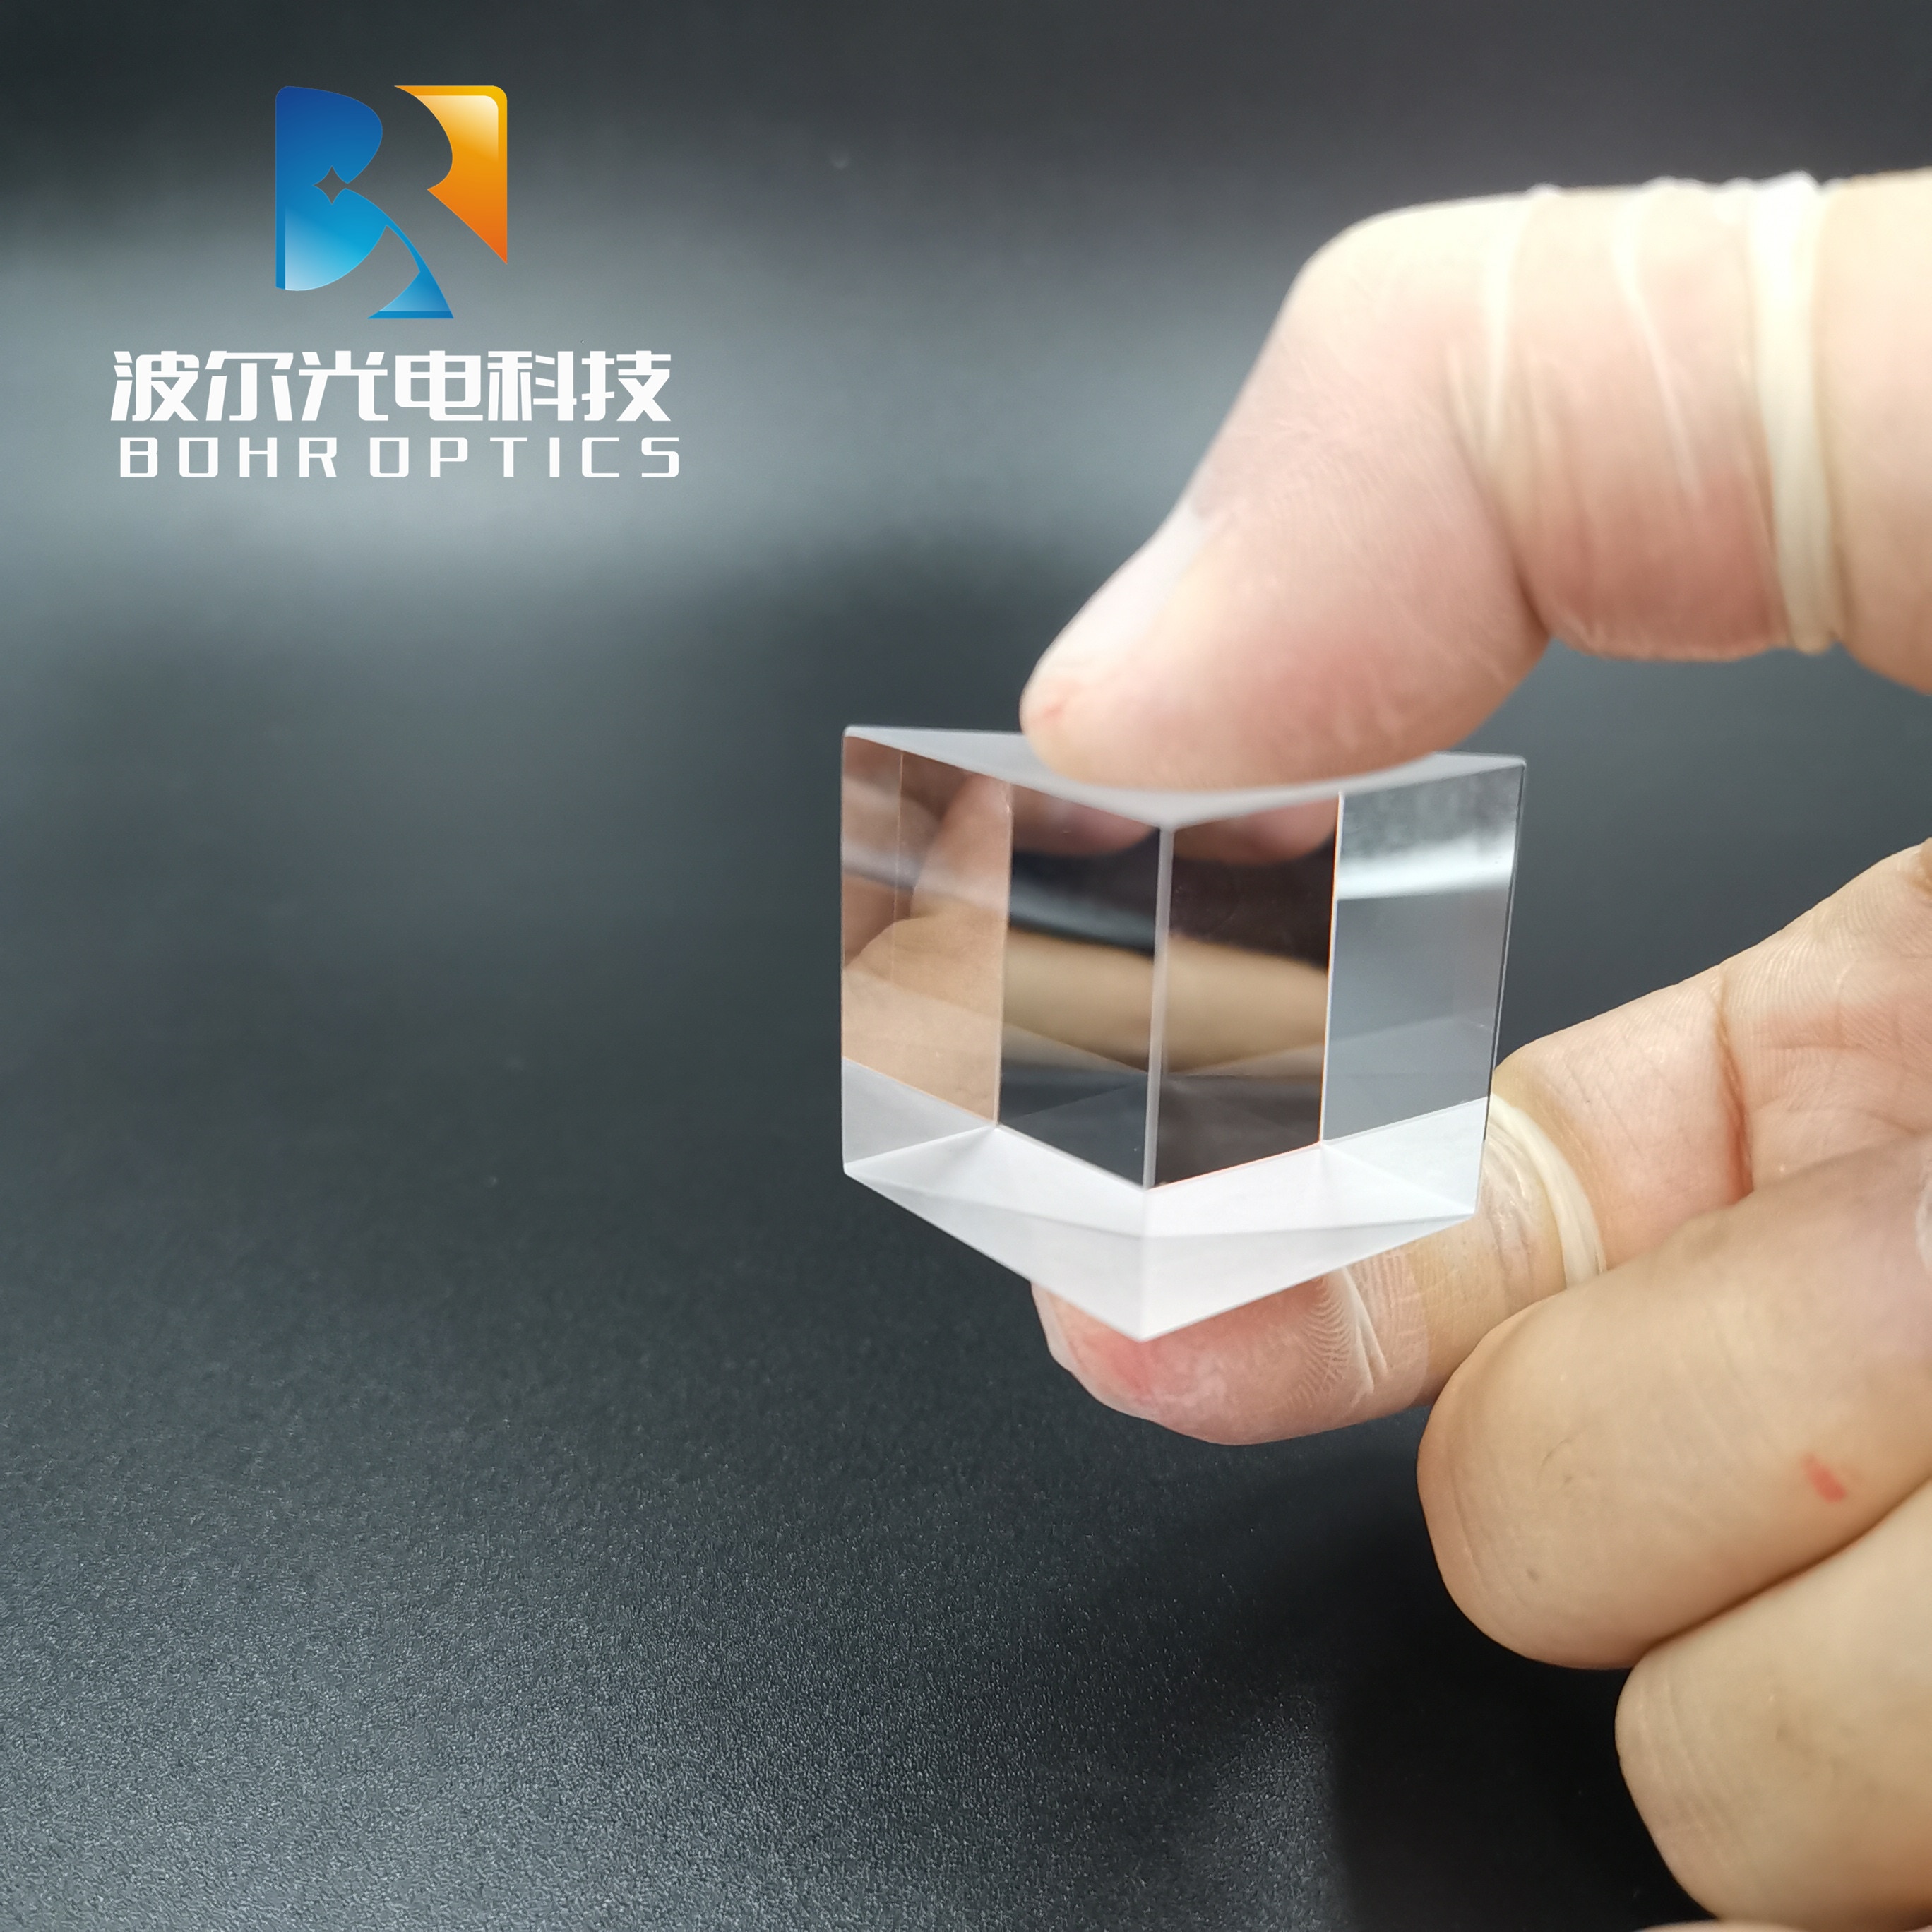 10 x 10 x 10mm retvinklet prisme uden belægning n -bk7 (k9)  optiske komponenter glas til optiske præcisionsinstrumenter